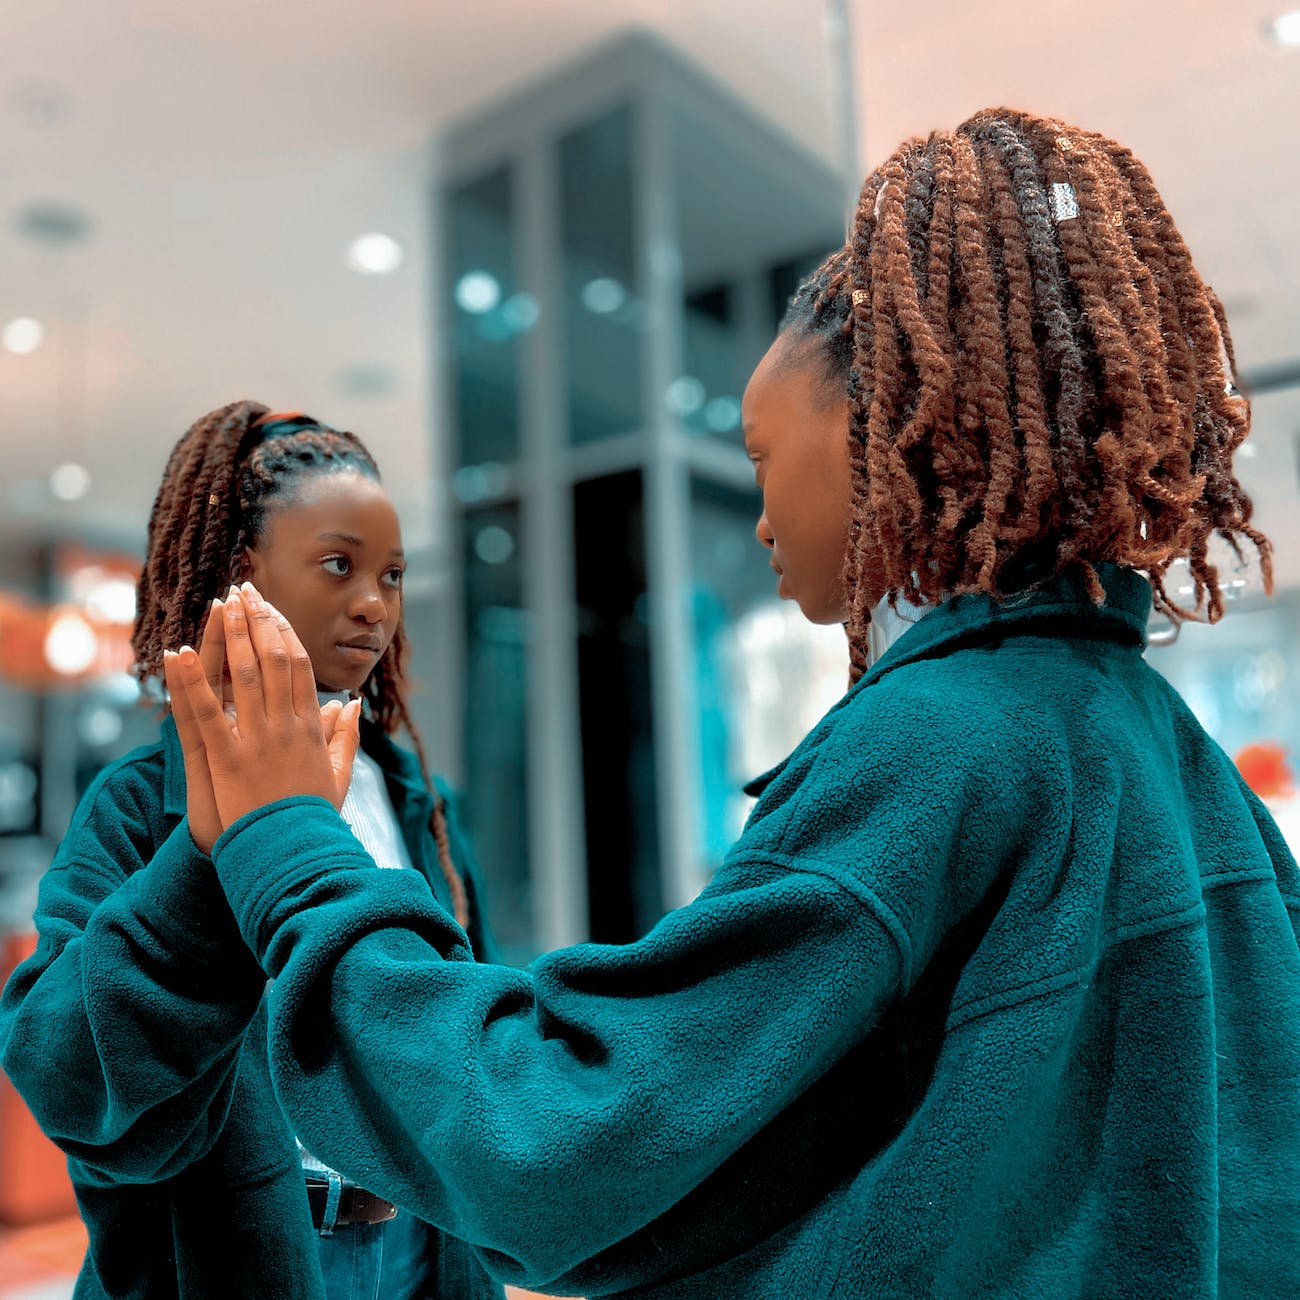 person of color looking in mirror